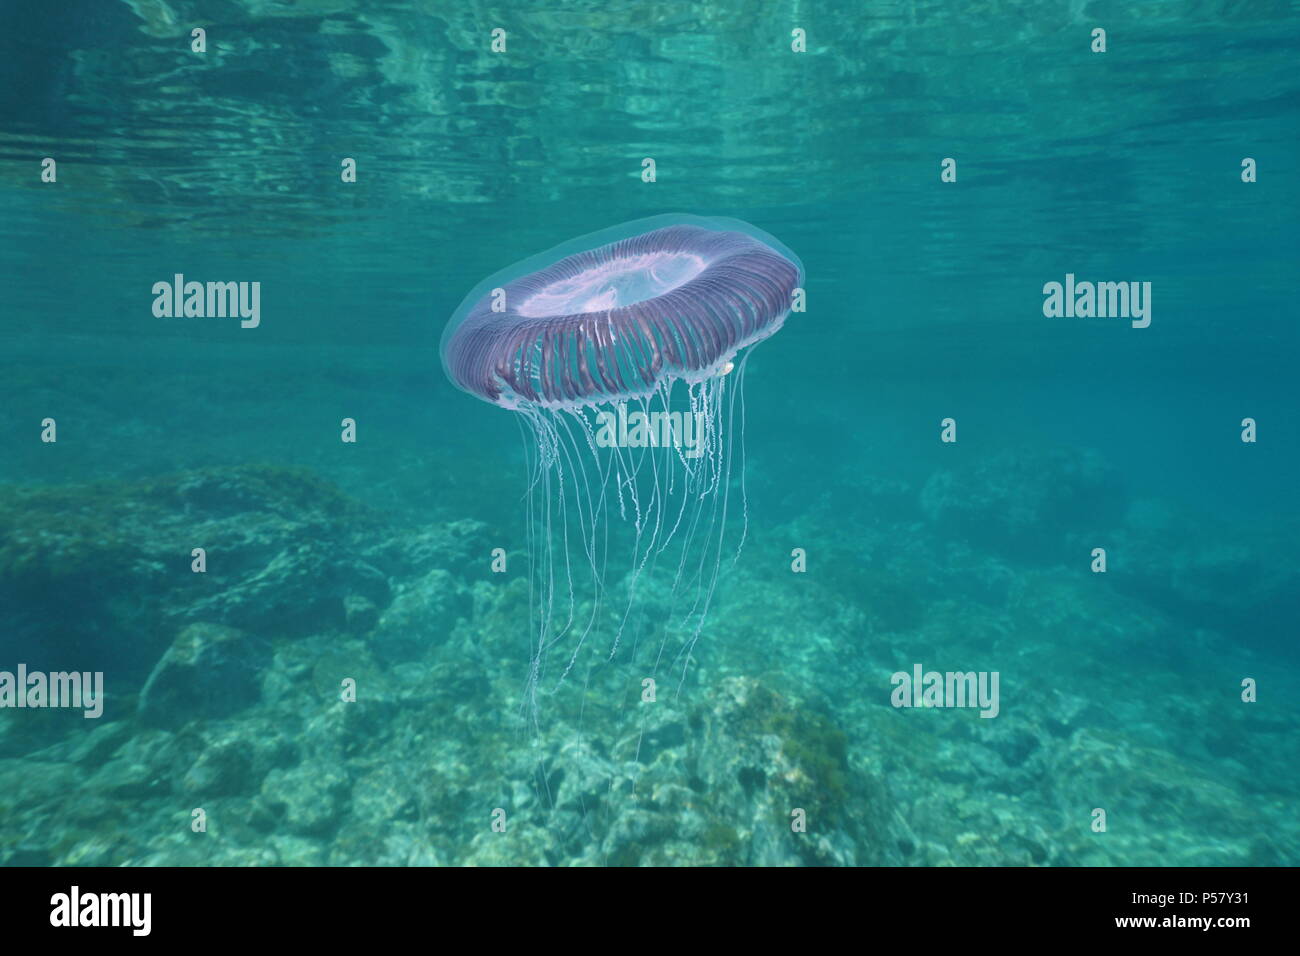 Un sous-marin de nombreuses méduses Aequorea forskalea striée, mer Méditerranée, Côte d'Azur, France Banque D'Images